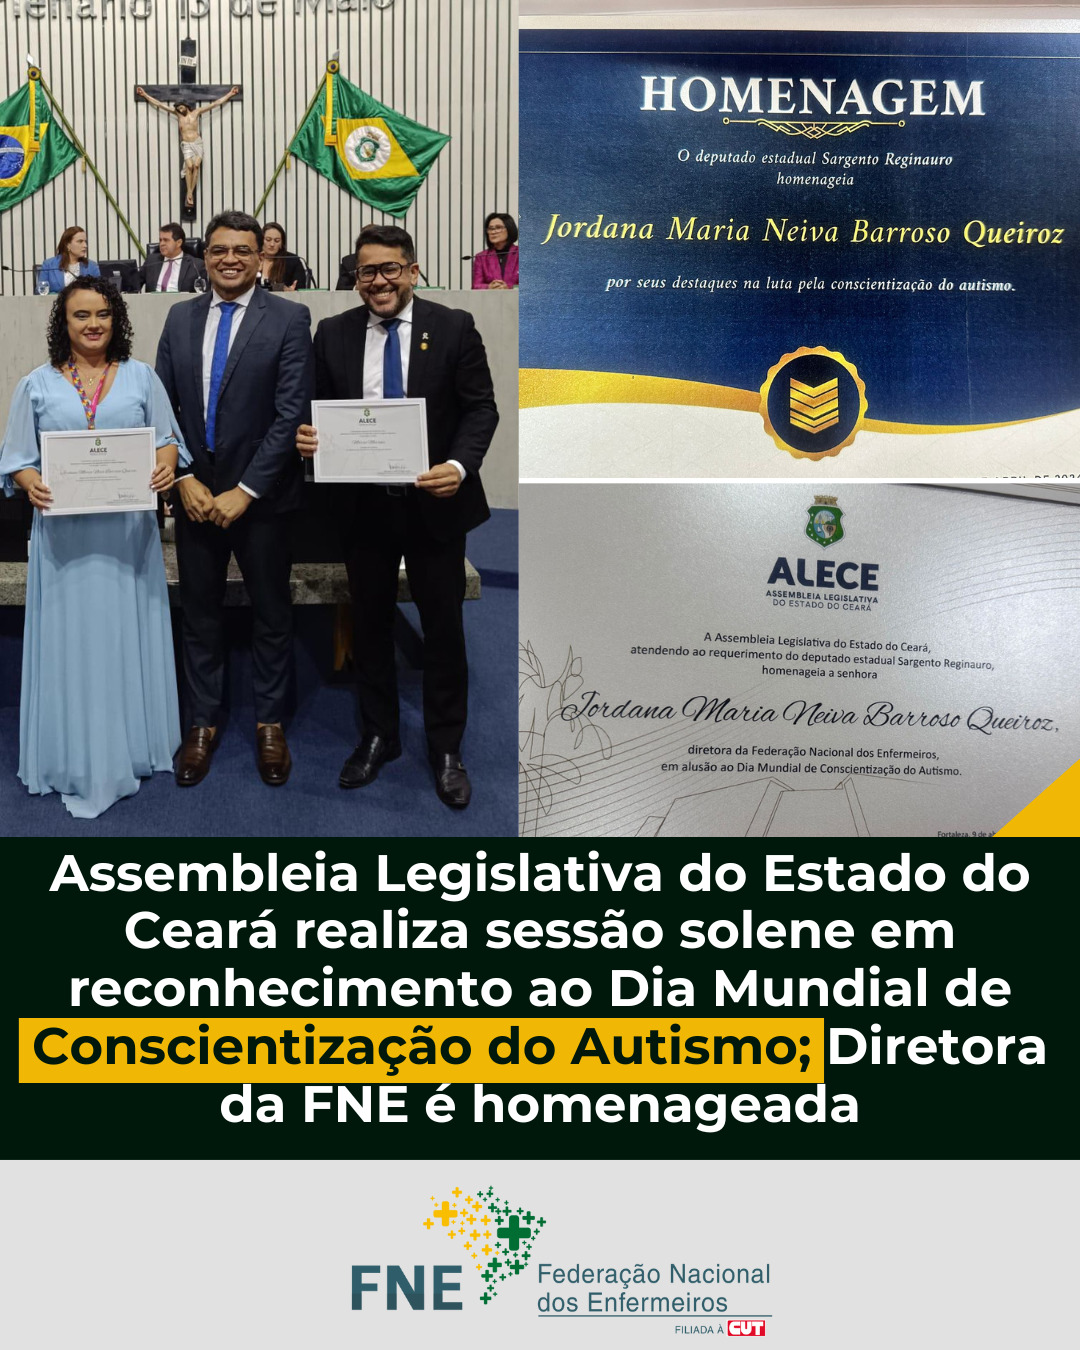 Assembleia Legislativa do Estado do Ceará realiza sessão solene em reconhecimento ao Dia Mundial de Conscientização do Autismo; Diretora da FNE é homenageada